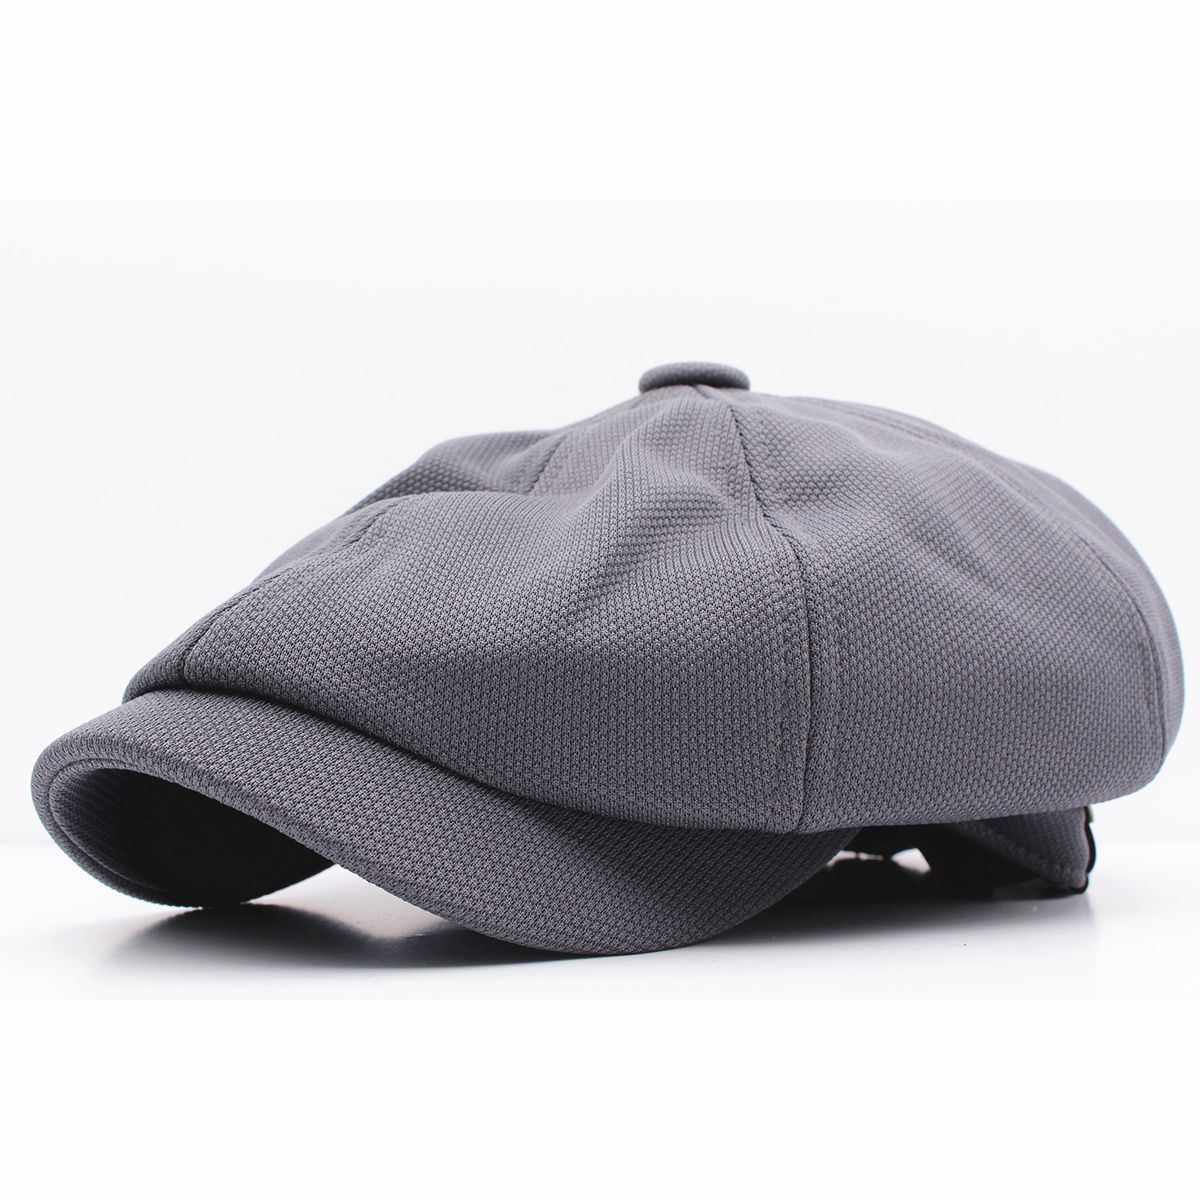 キャスケット帽子 無地 カジュアル派 ポリ キャップ 帽子 メンズ レディース 56cm~59cm GY KC76-3